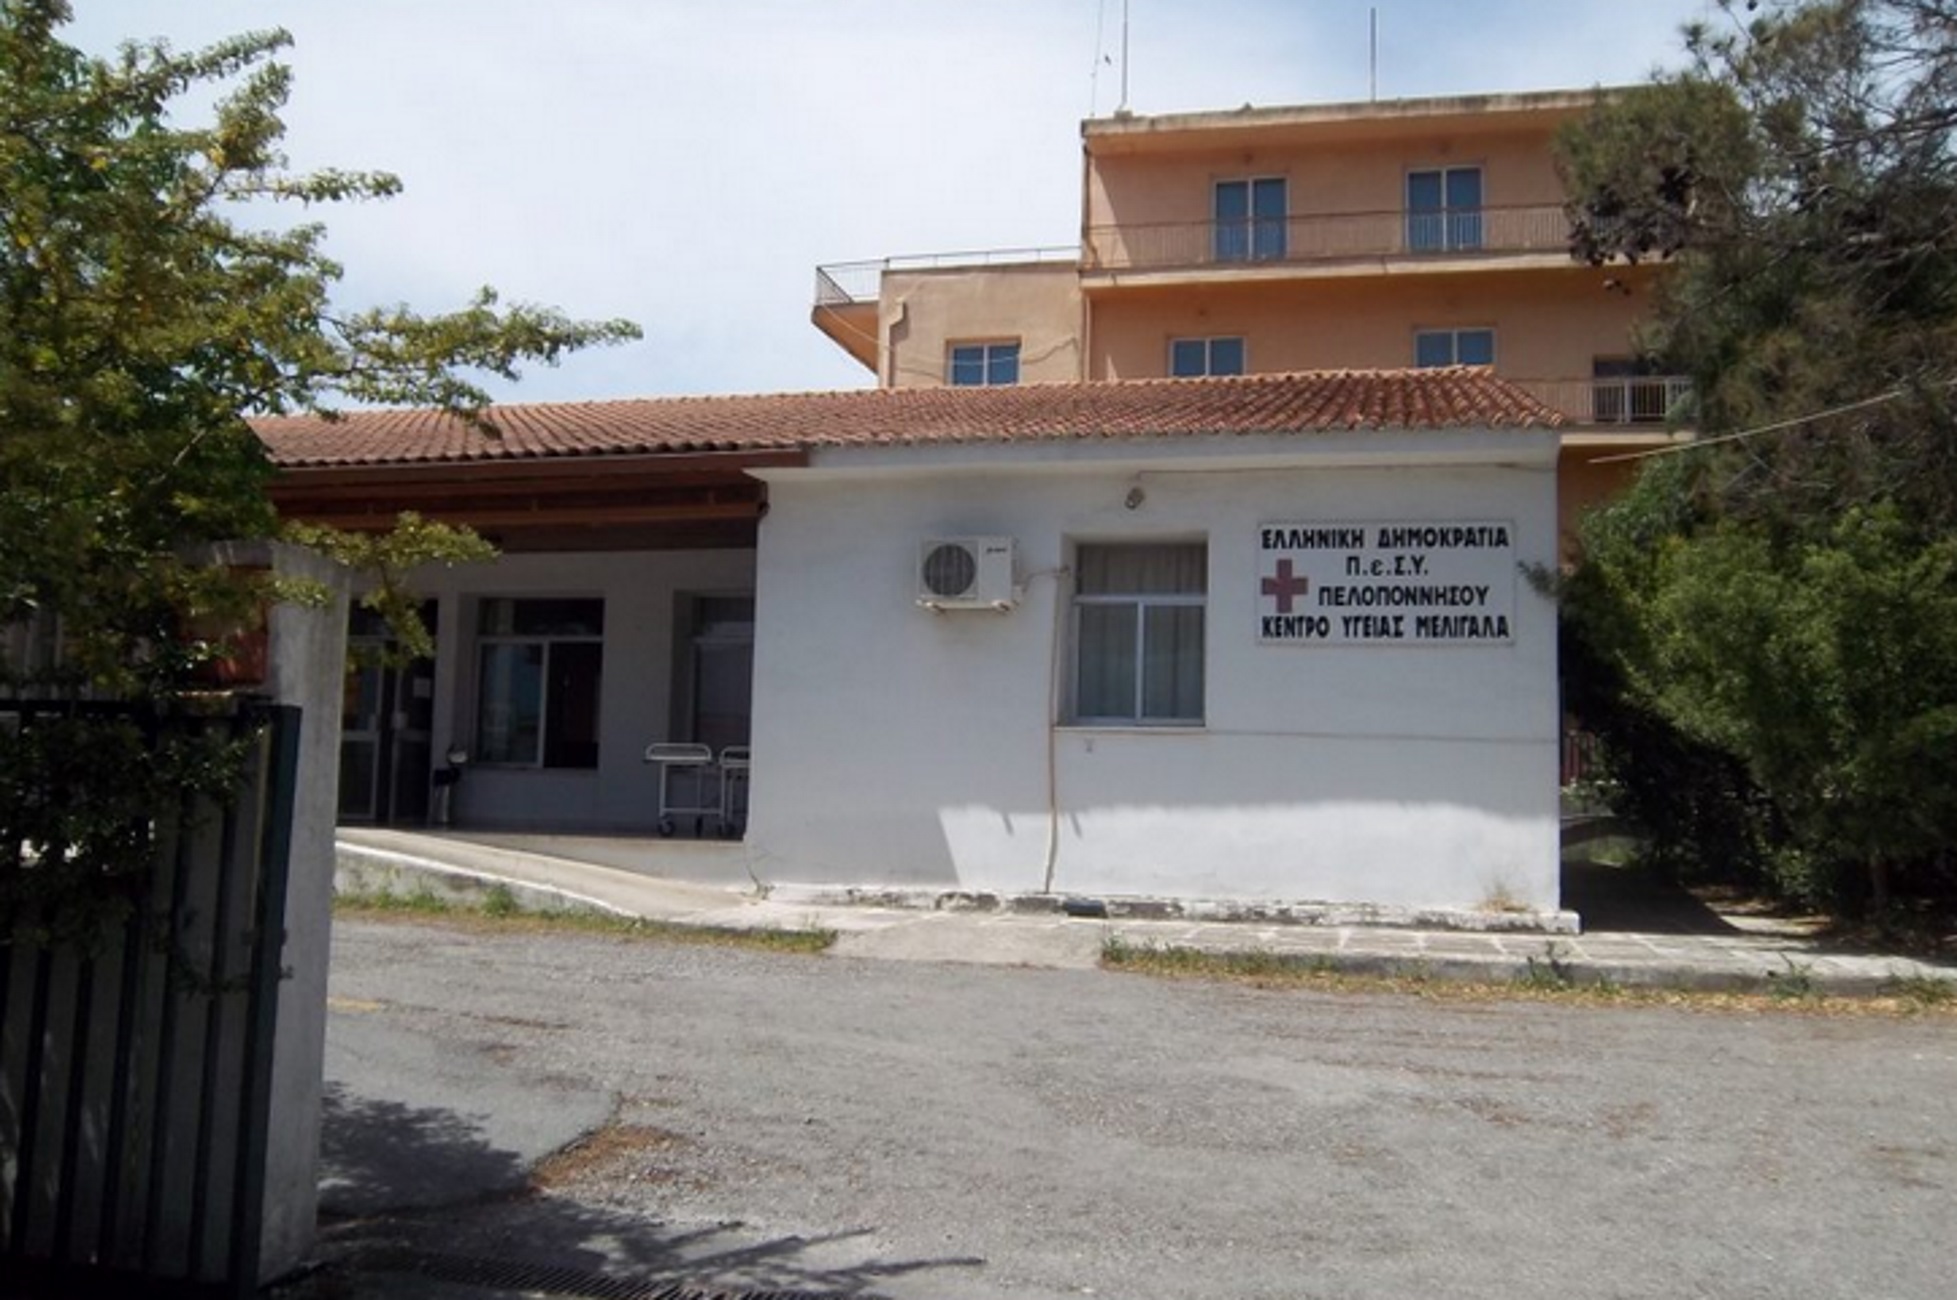 Κορονοϊός – Μεσσηνία: Επιτέθηκαν σε γιατρούς και μία νοσηλεύτρια – Ξύλο στο Κέντρο Υγείας Μελιγαλά